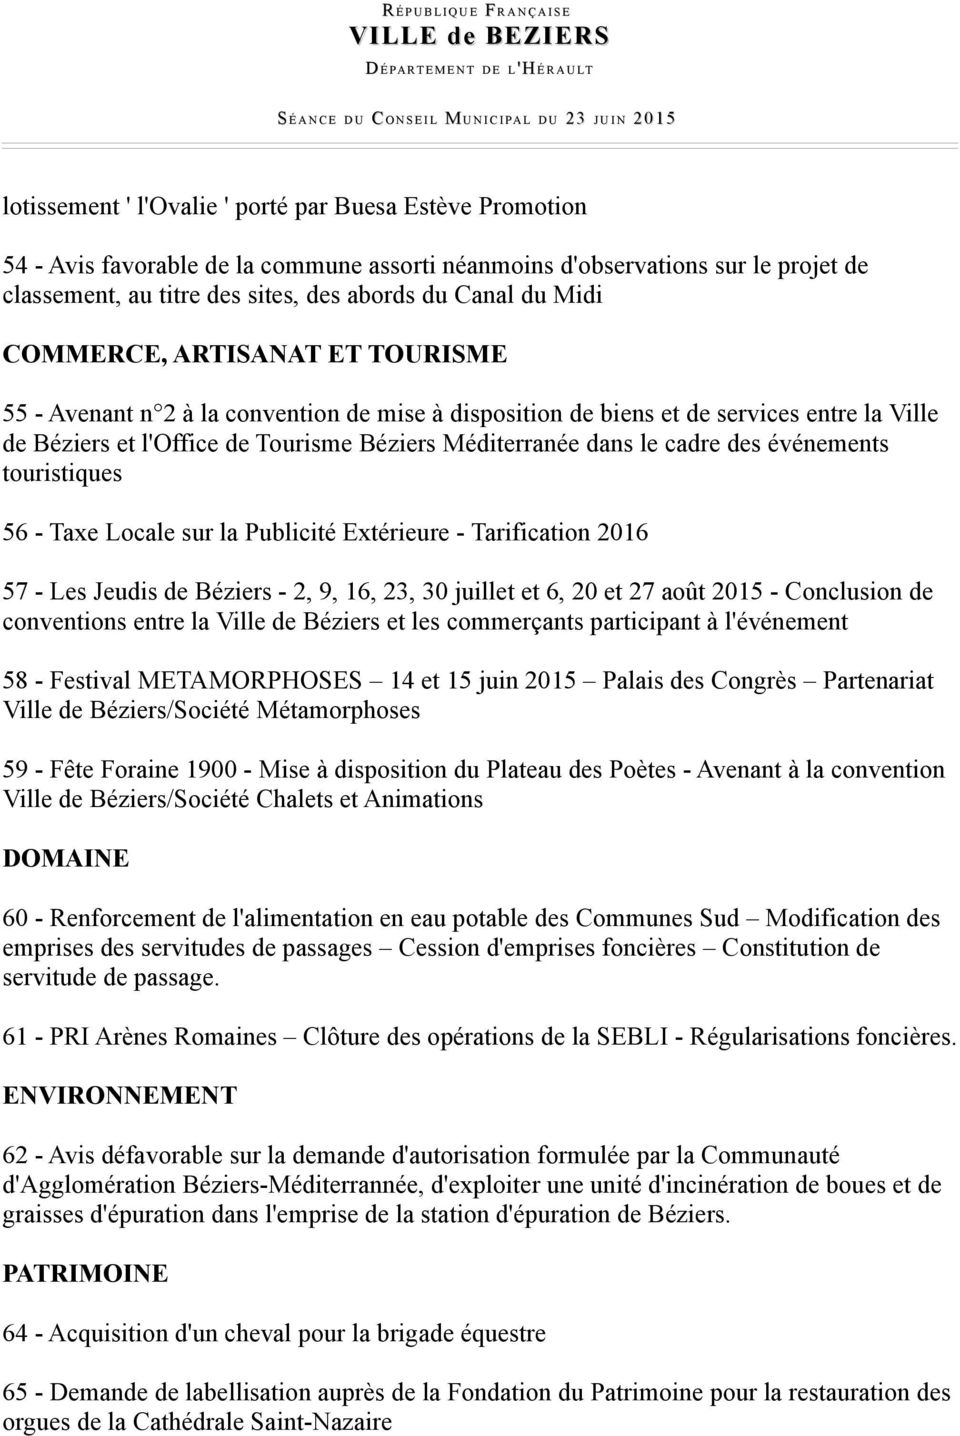 cadre des événements touristiques 56 - Taxe Locale sur la Publicité Extérieure - Tarification 2016 57 - Les Jeudis de Béziers - 2, 9, 16, 23, 30 juillet et 6, 20 et 27 août 2015 - Conclusion de